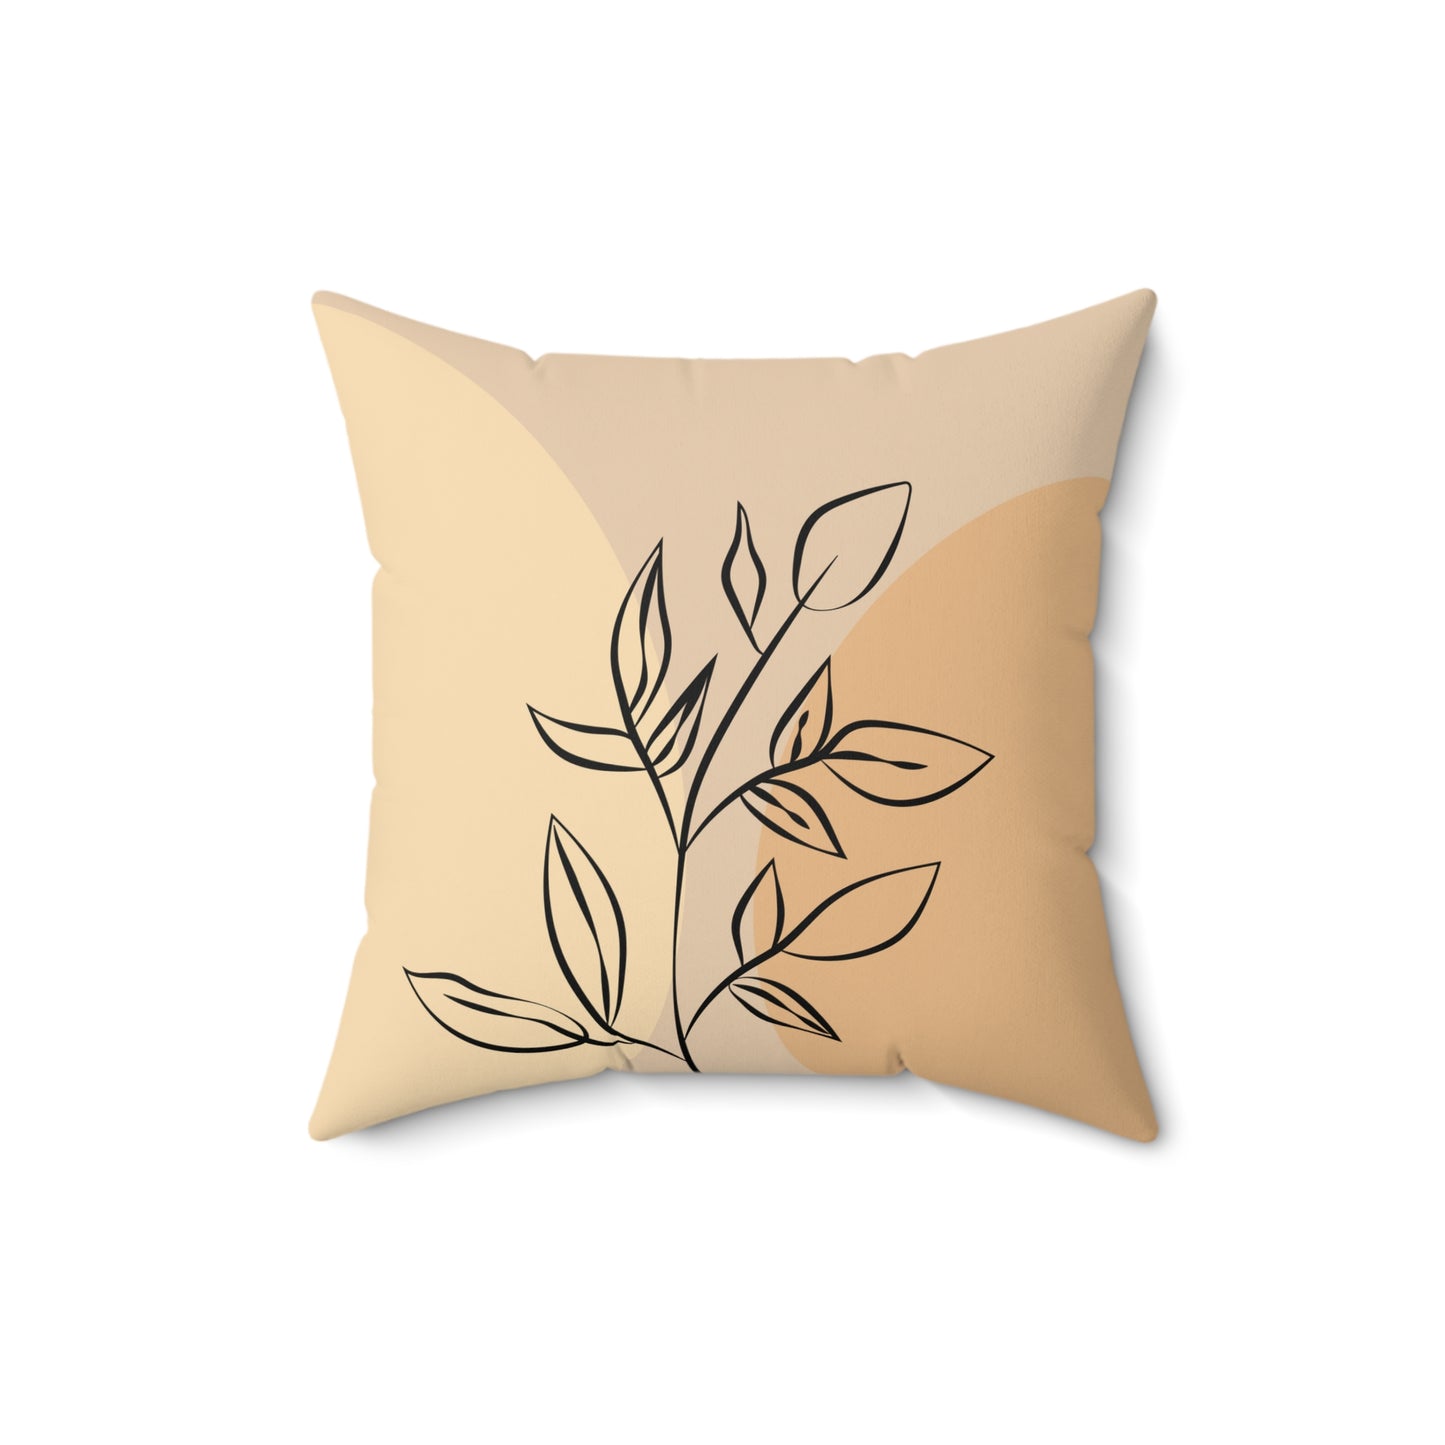 Botanical Throw Pillow